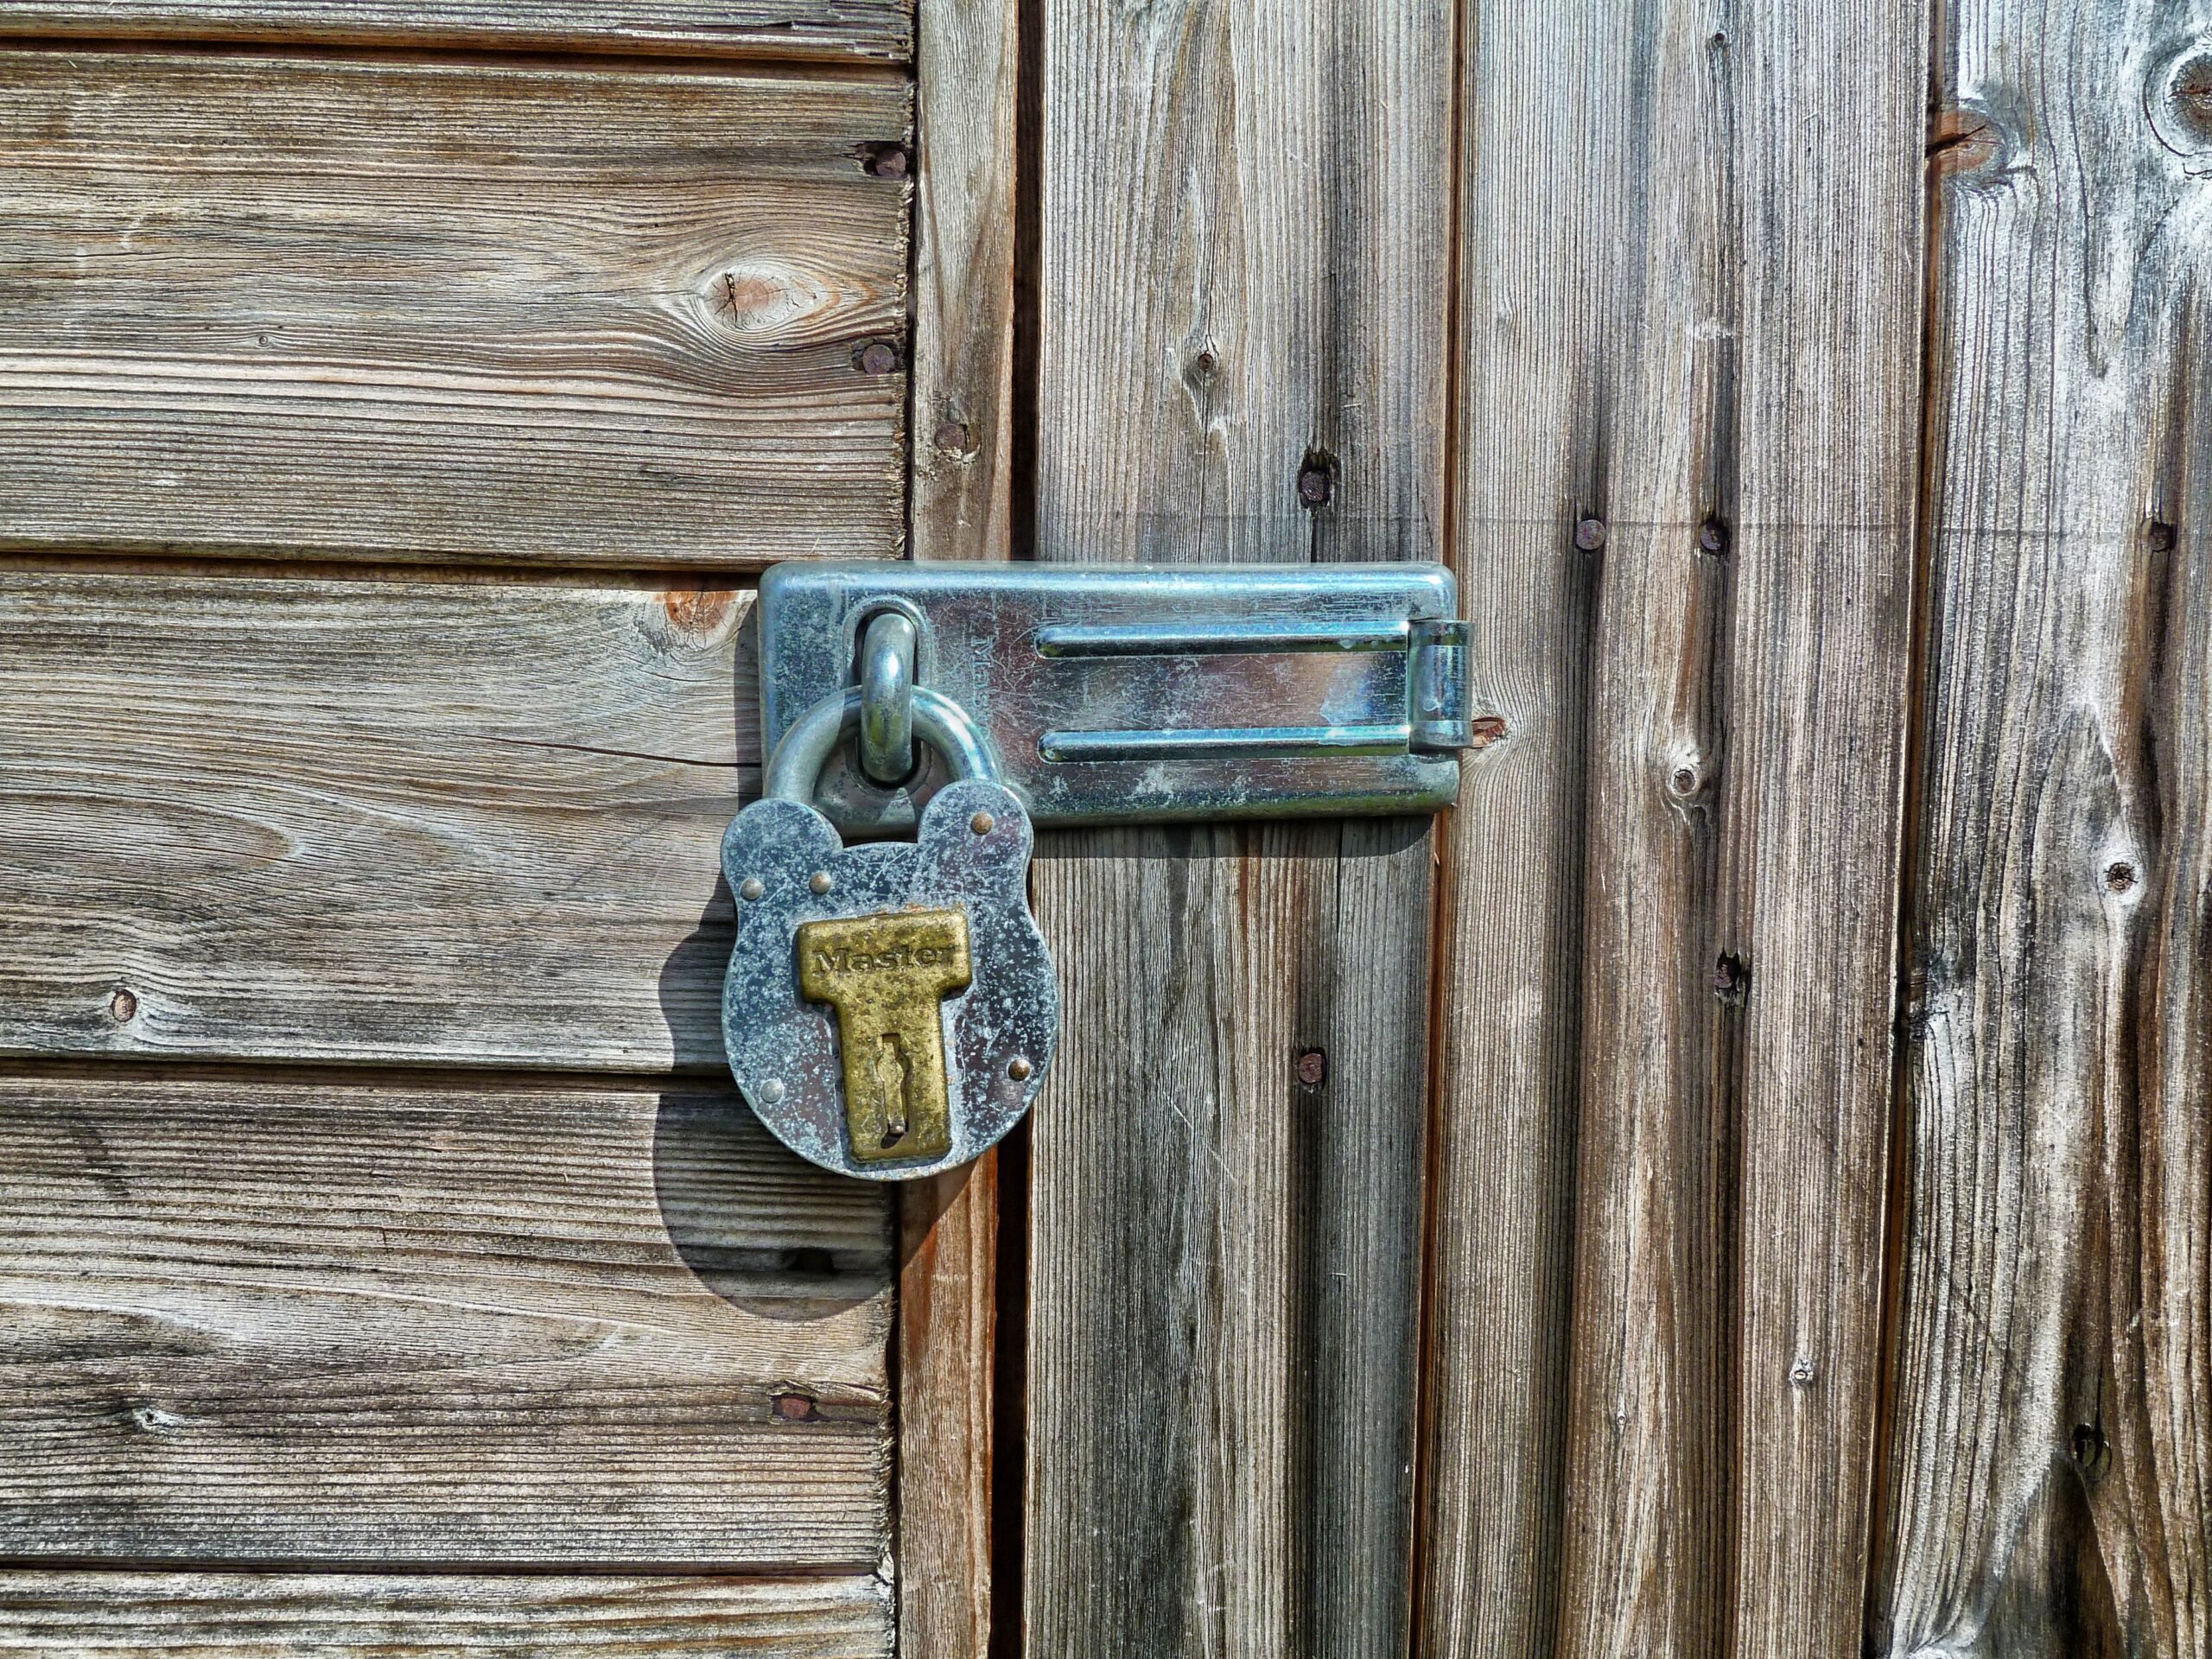 Best locksmith services in Agoura Hills